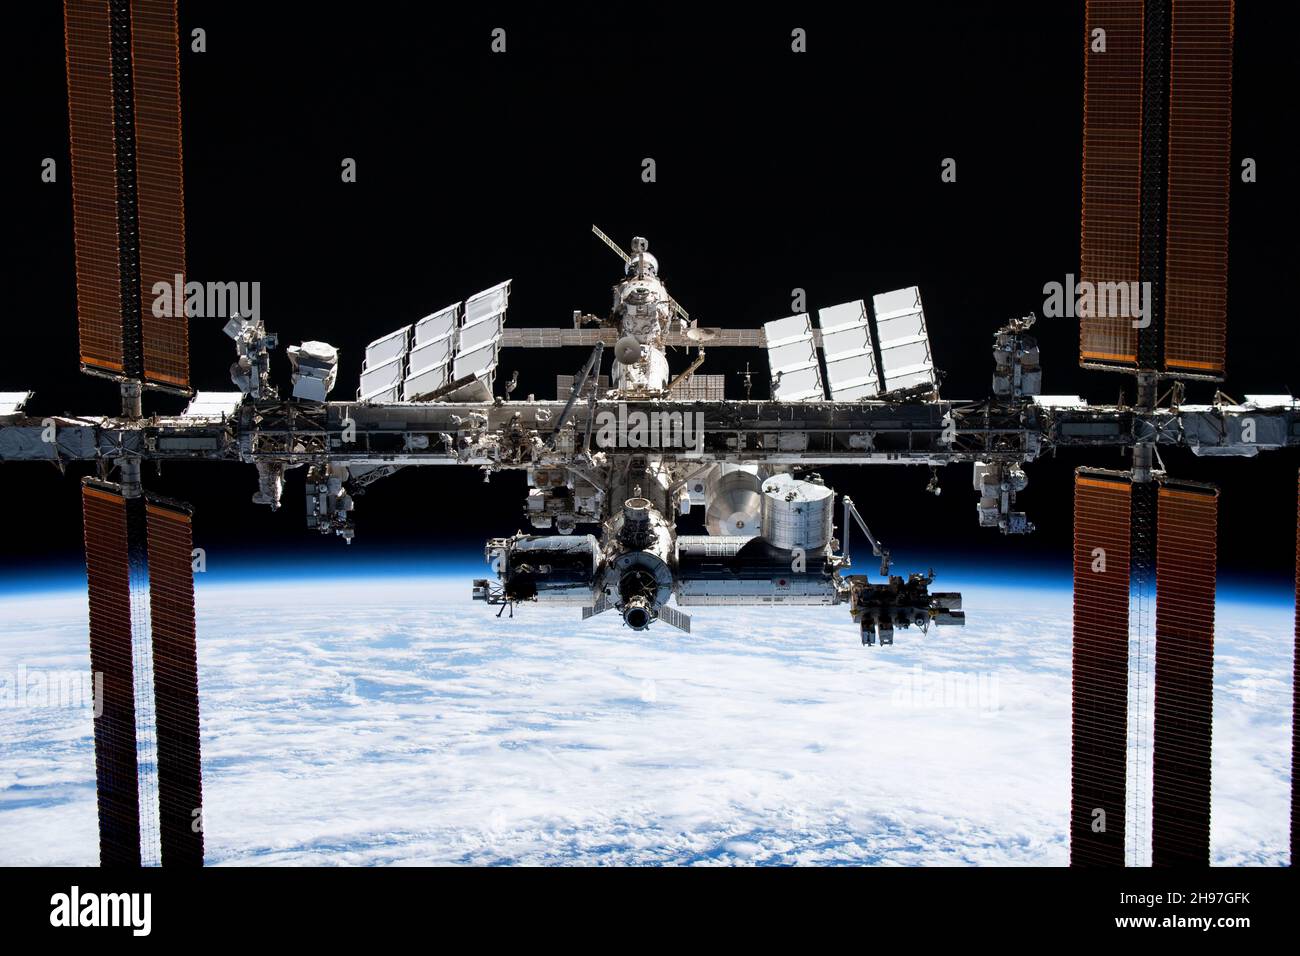 AN BORD DER BESATZUNG DRAGON ENDEAVOUR, ERDE - 08. November 2021 - die Internationale Raumstation ist von der SpaceX Crew Dragon Endeavour während eines Flugs abgebildet Stockfoto